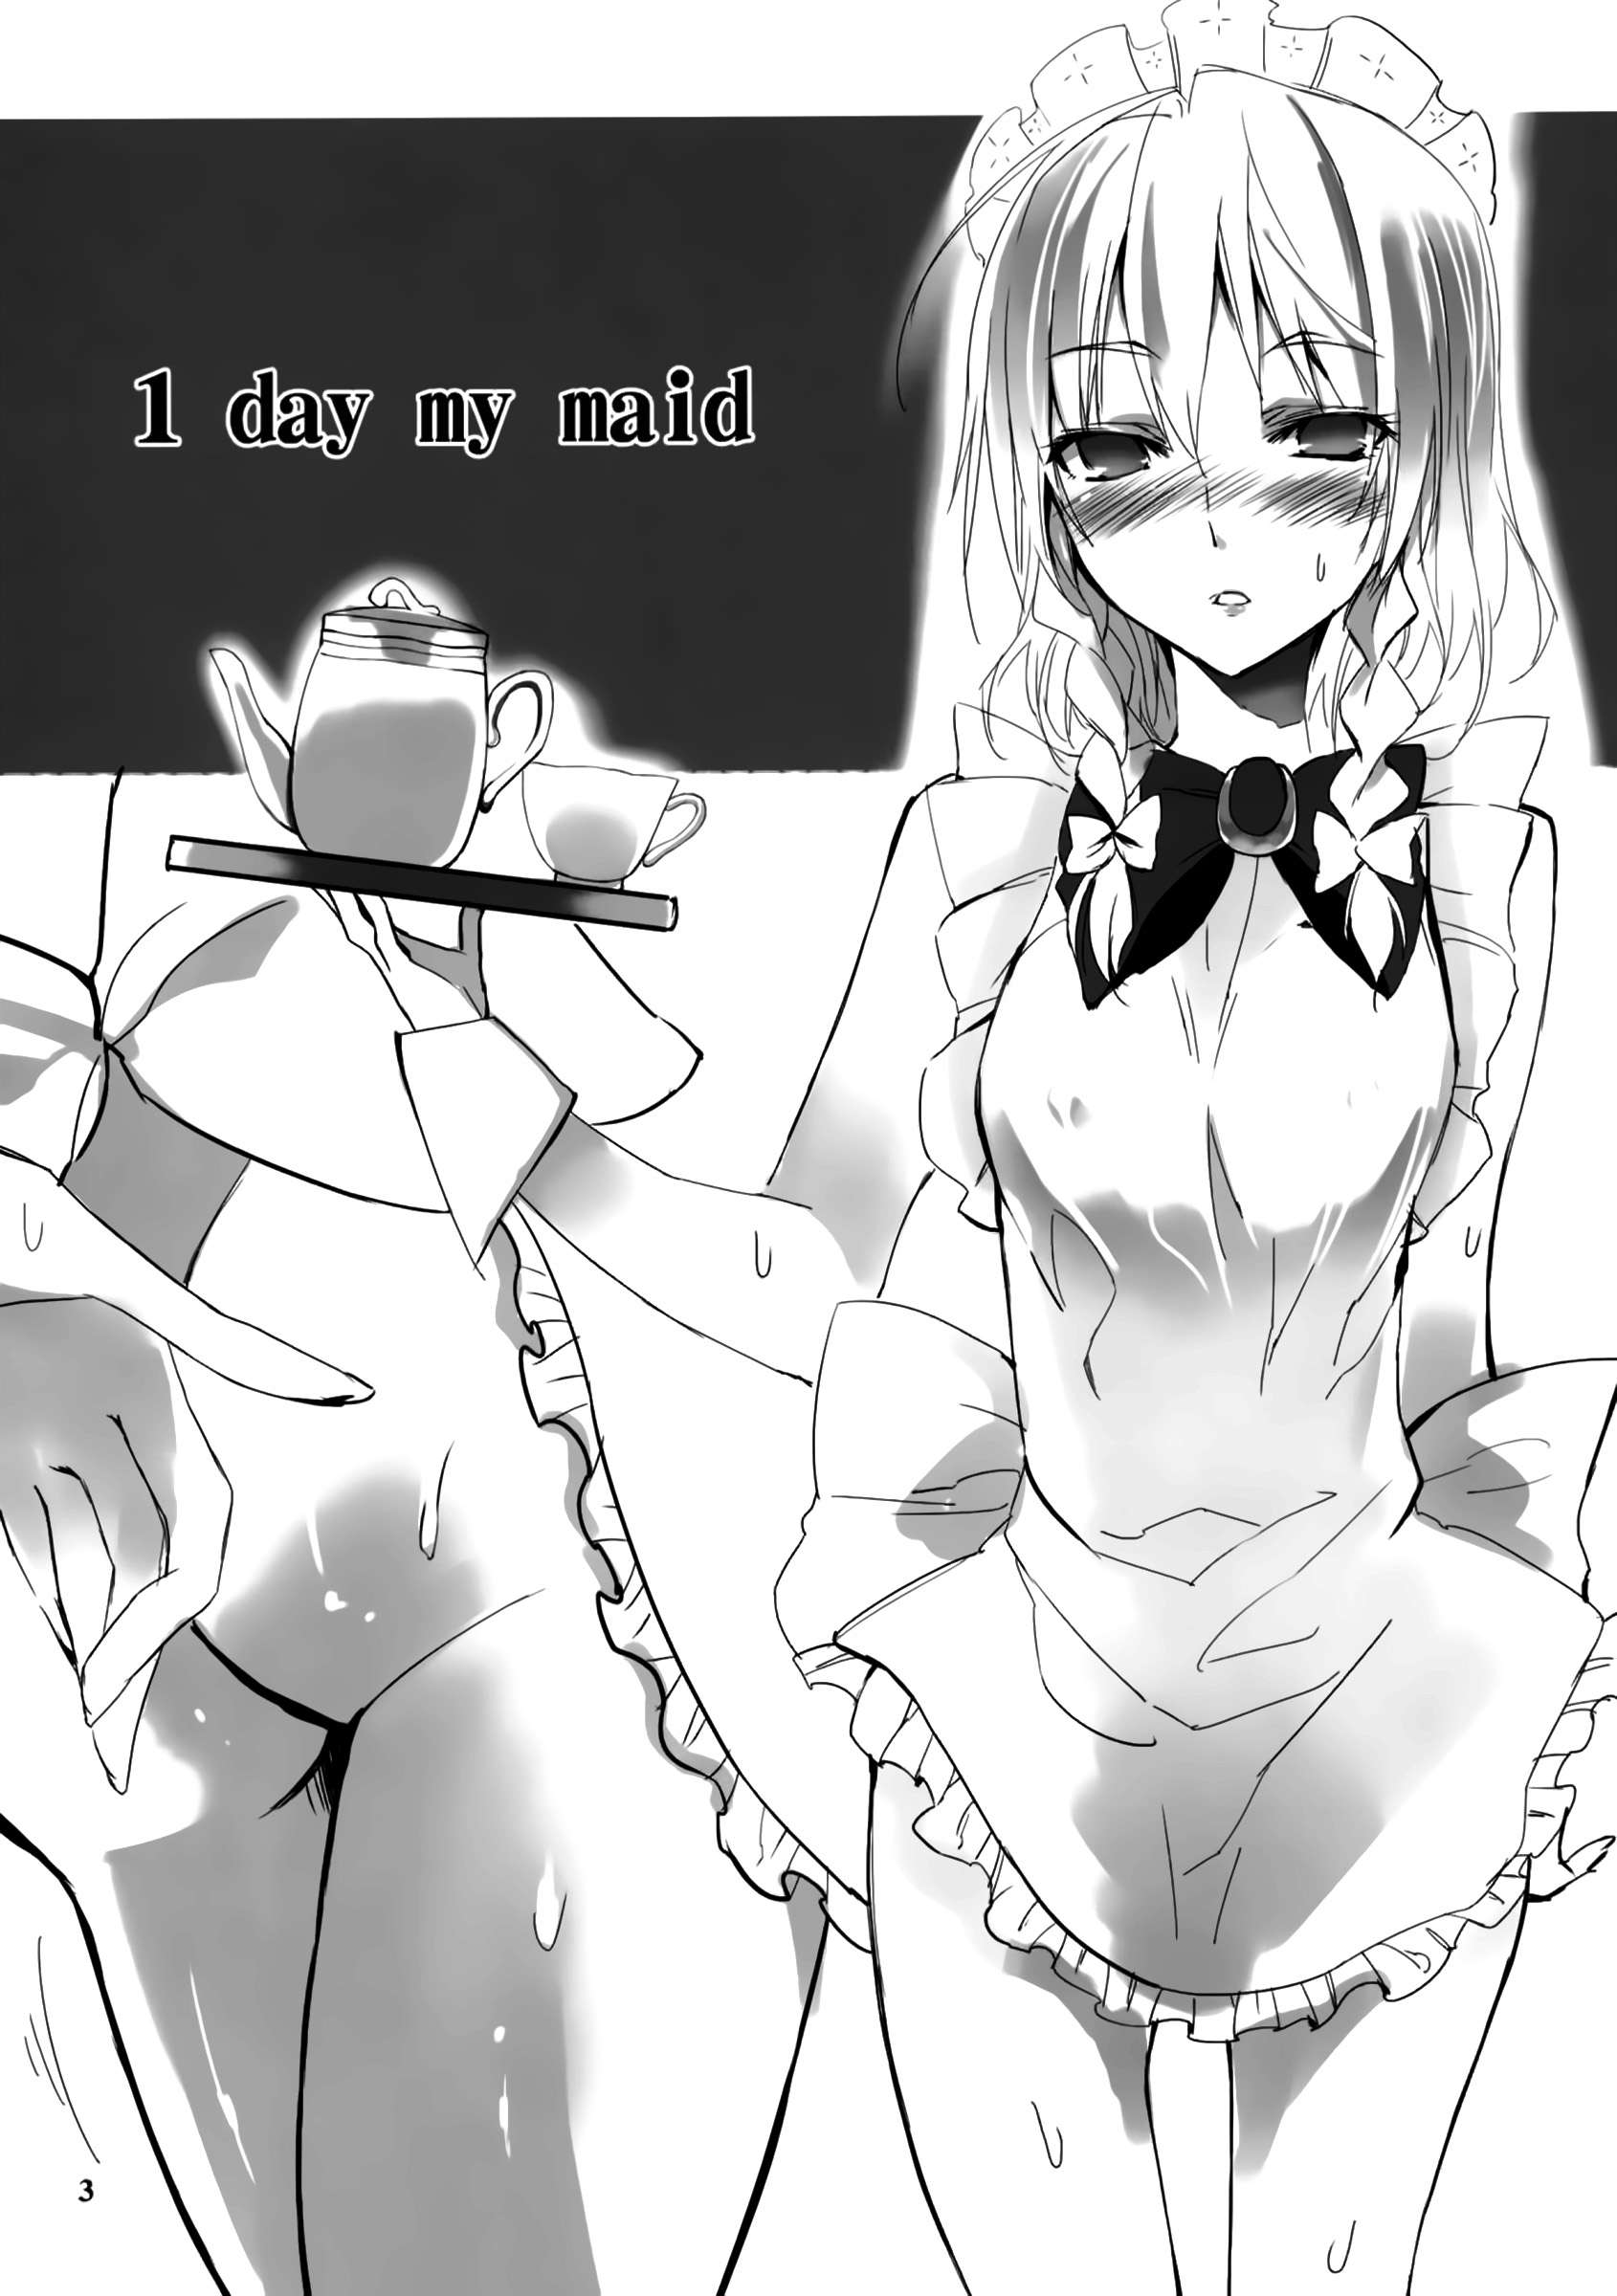 Un Día Mi Sirvienta (1 day my maid) Chapter-0 - 4